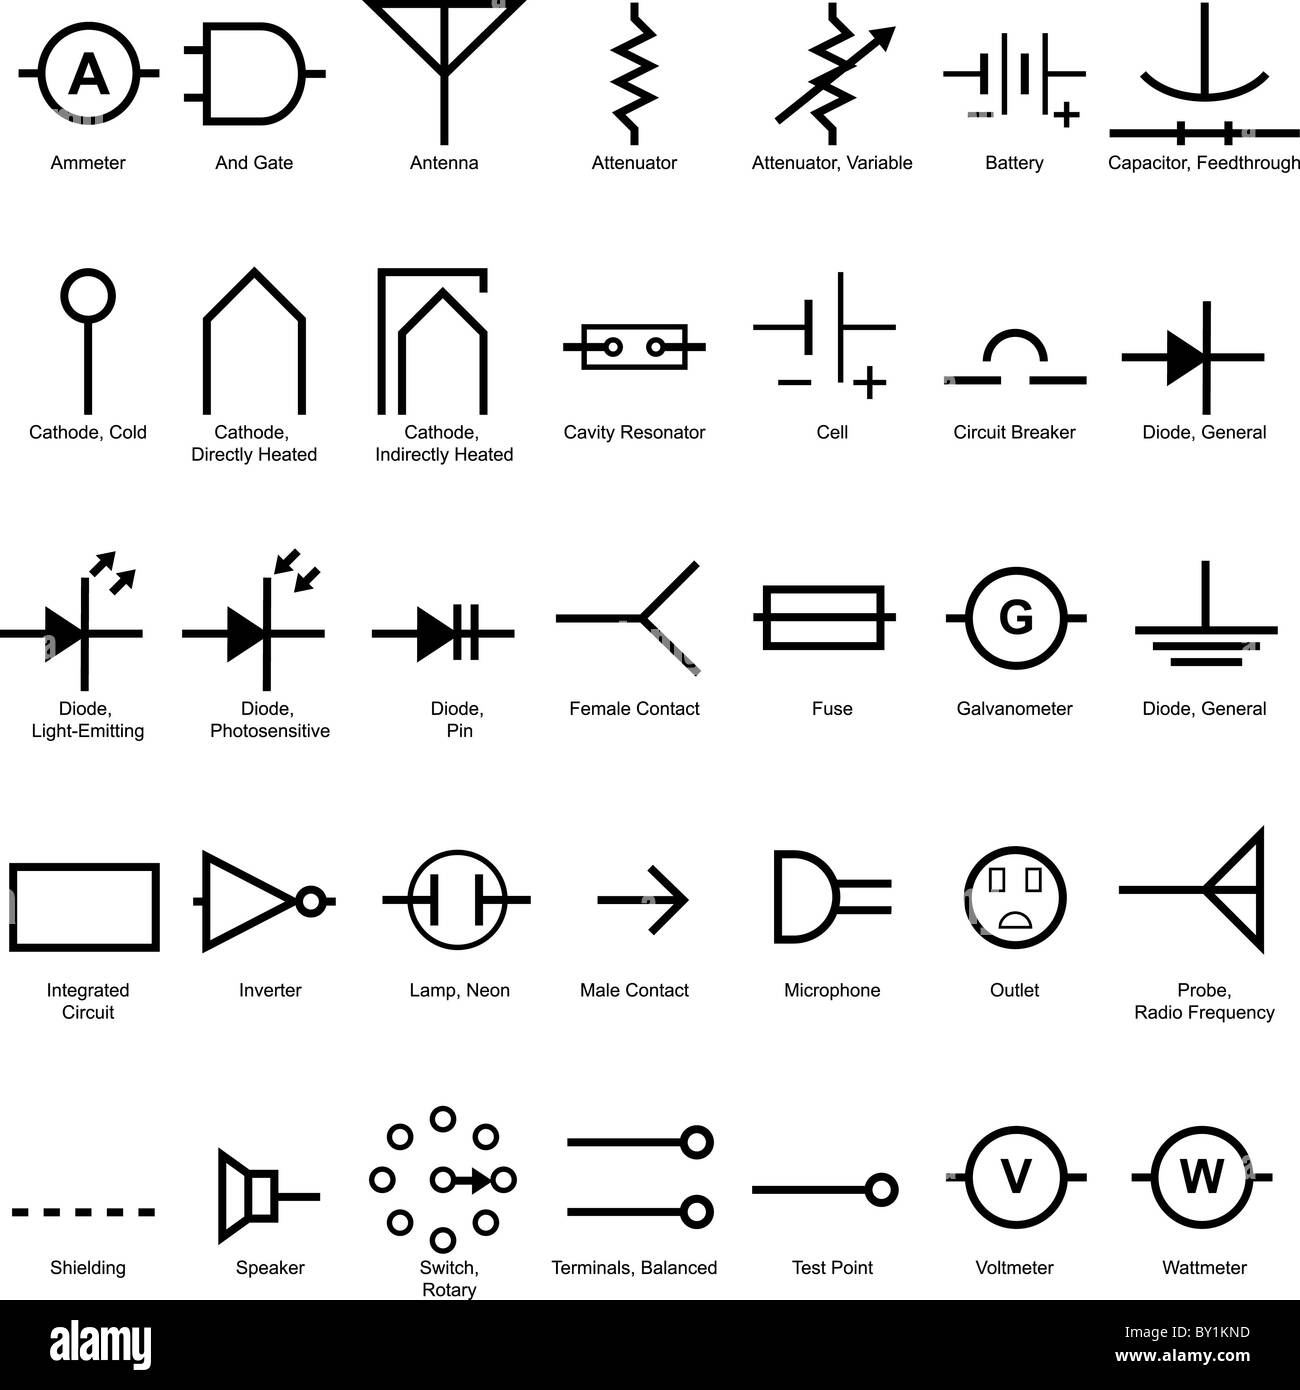 Electrical symbol Banque d'images noir et blanc - Alamy